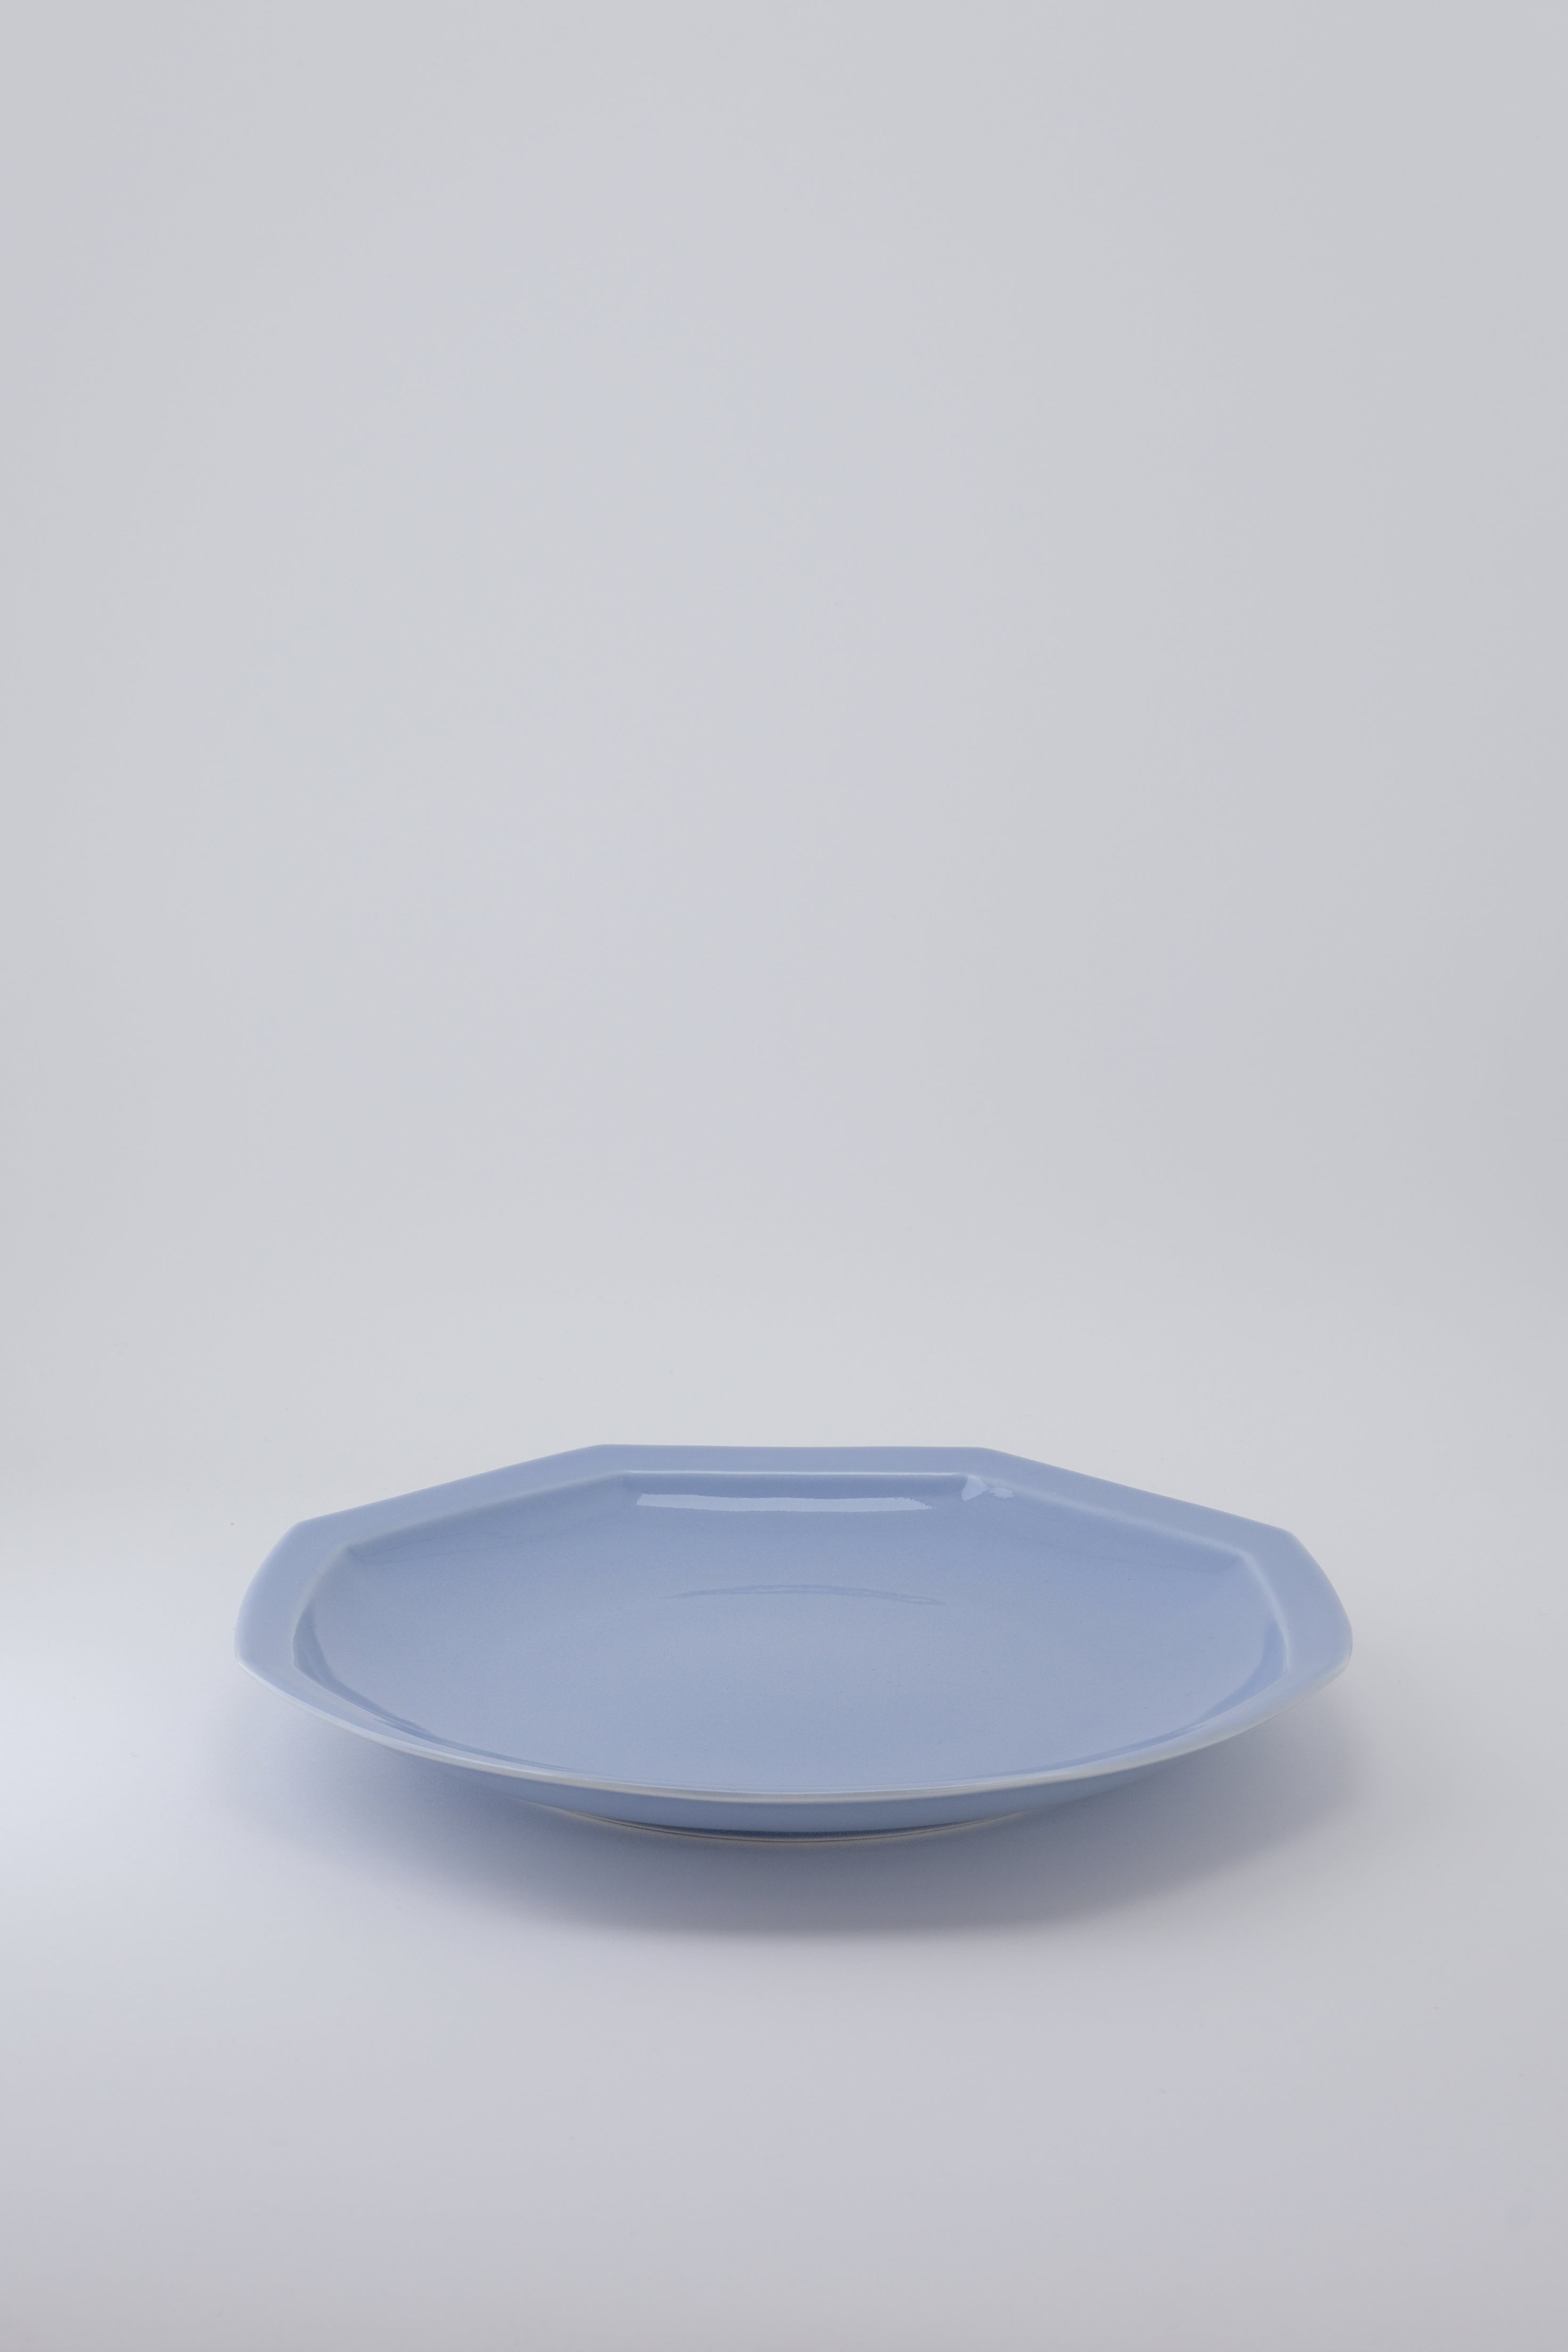 Octangle dinner plate light blue-Ogre-[interior]-[design]-KIOSK48TH